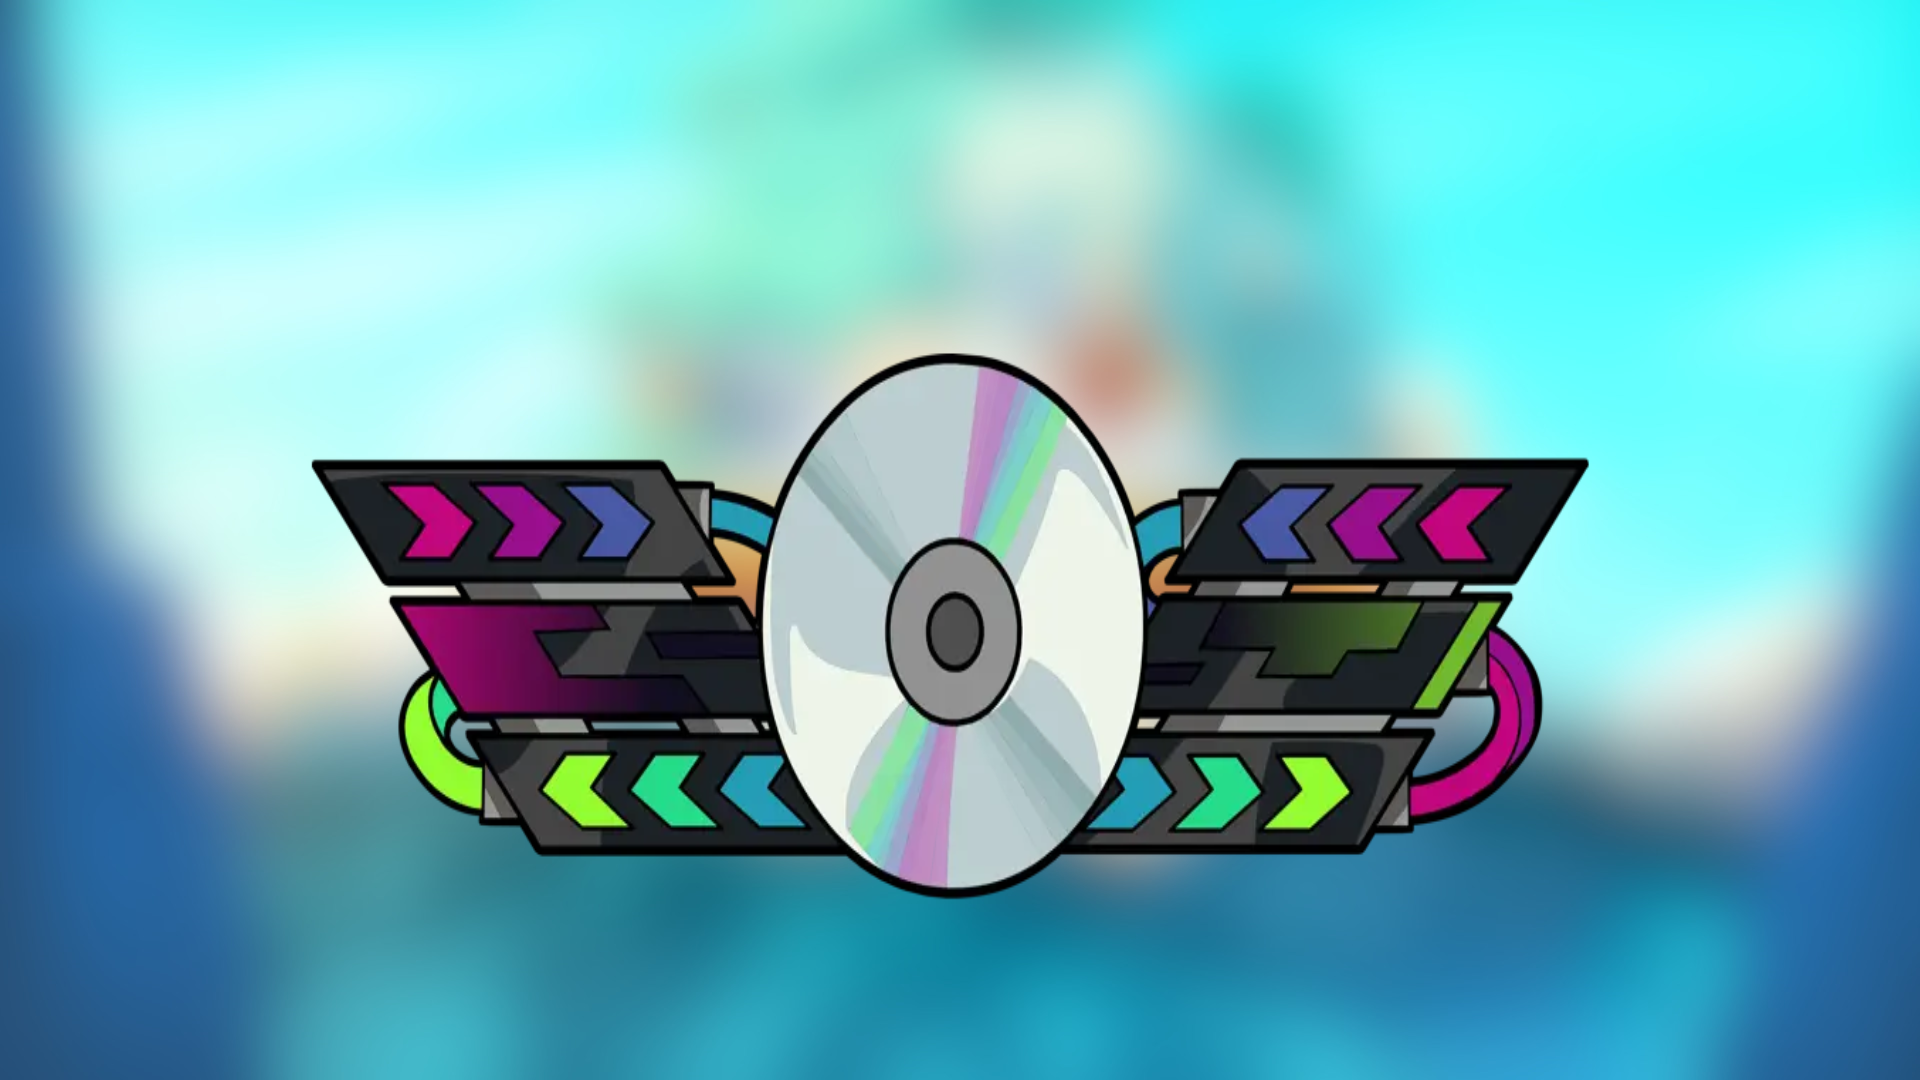 Brawlhalla - RGB Visualizer UI Theme DLC CD Key